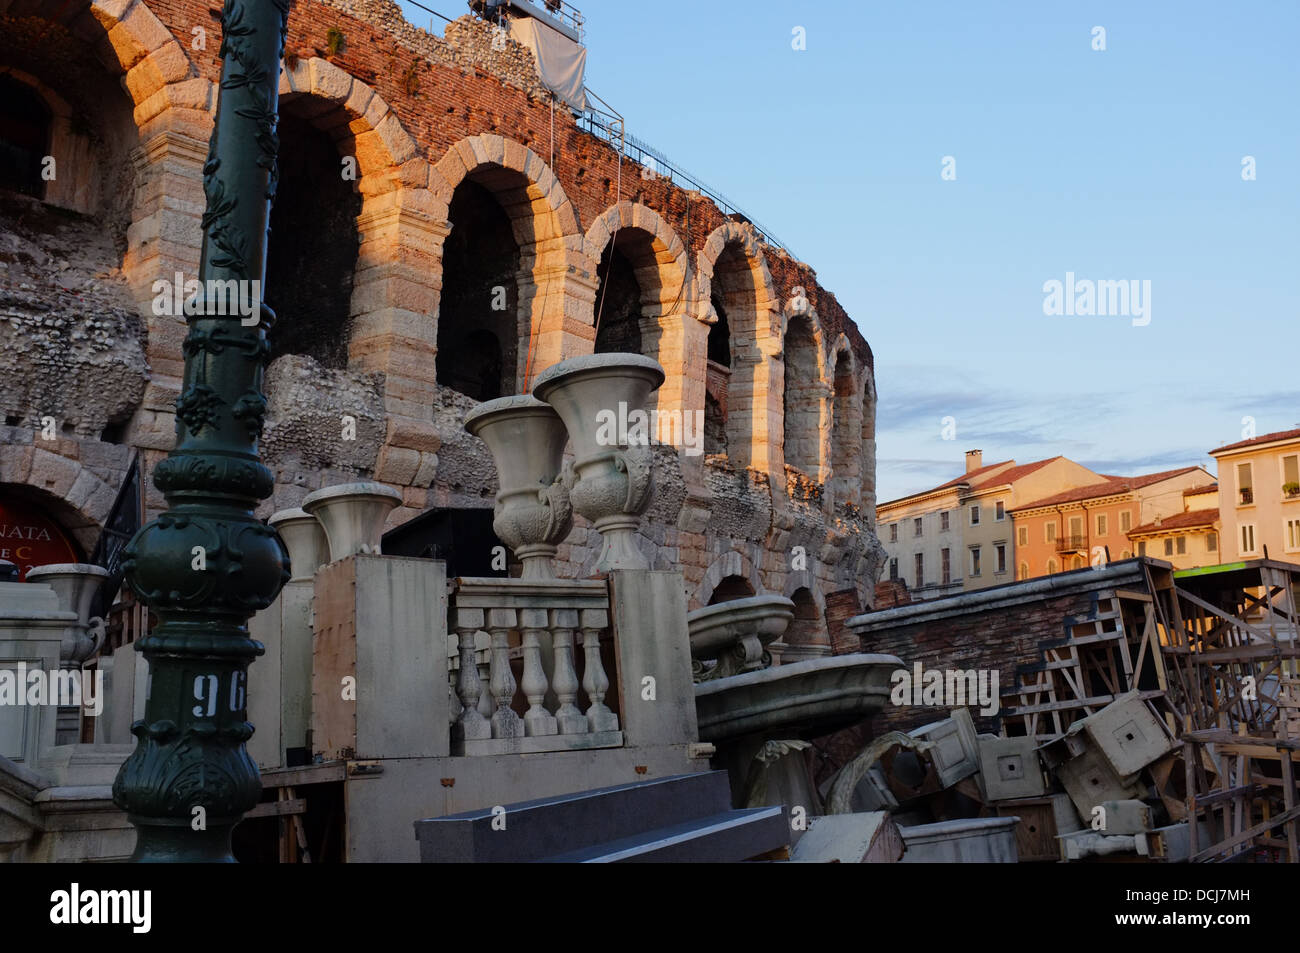 Verona Arena (Arena di Verona) Roman amphitheatre in Piazza Bra in Verona, Italy Stock Photo